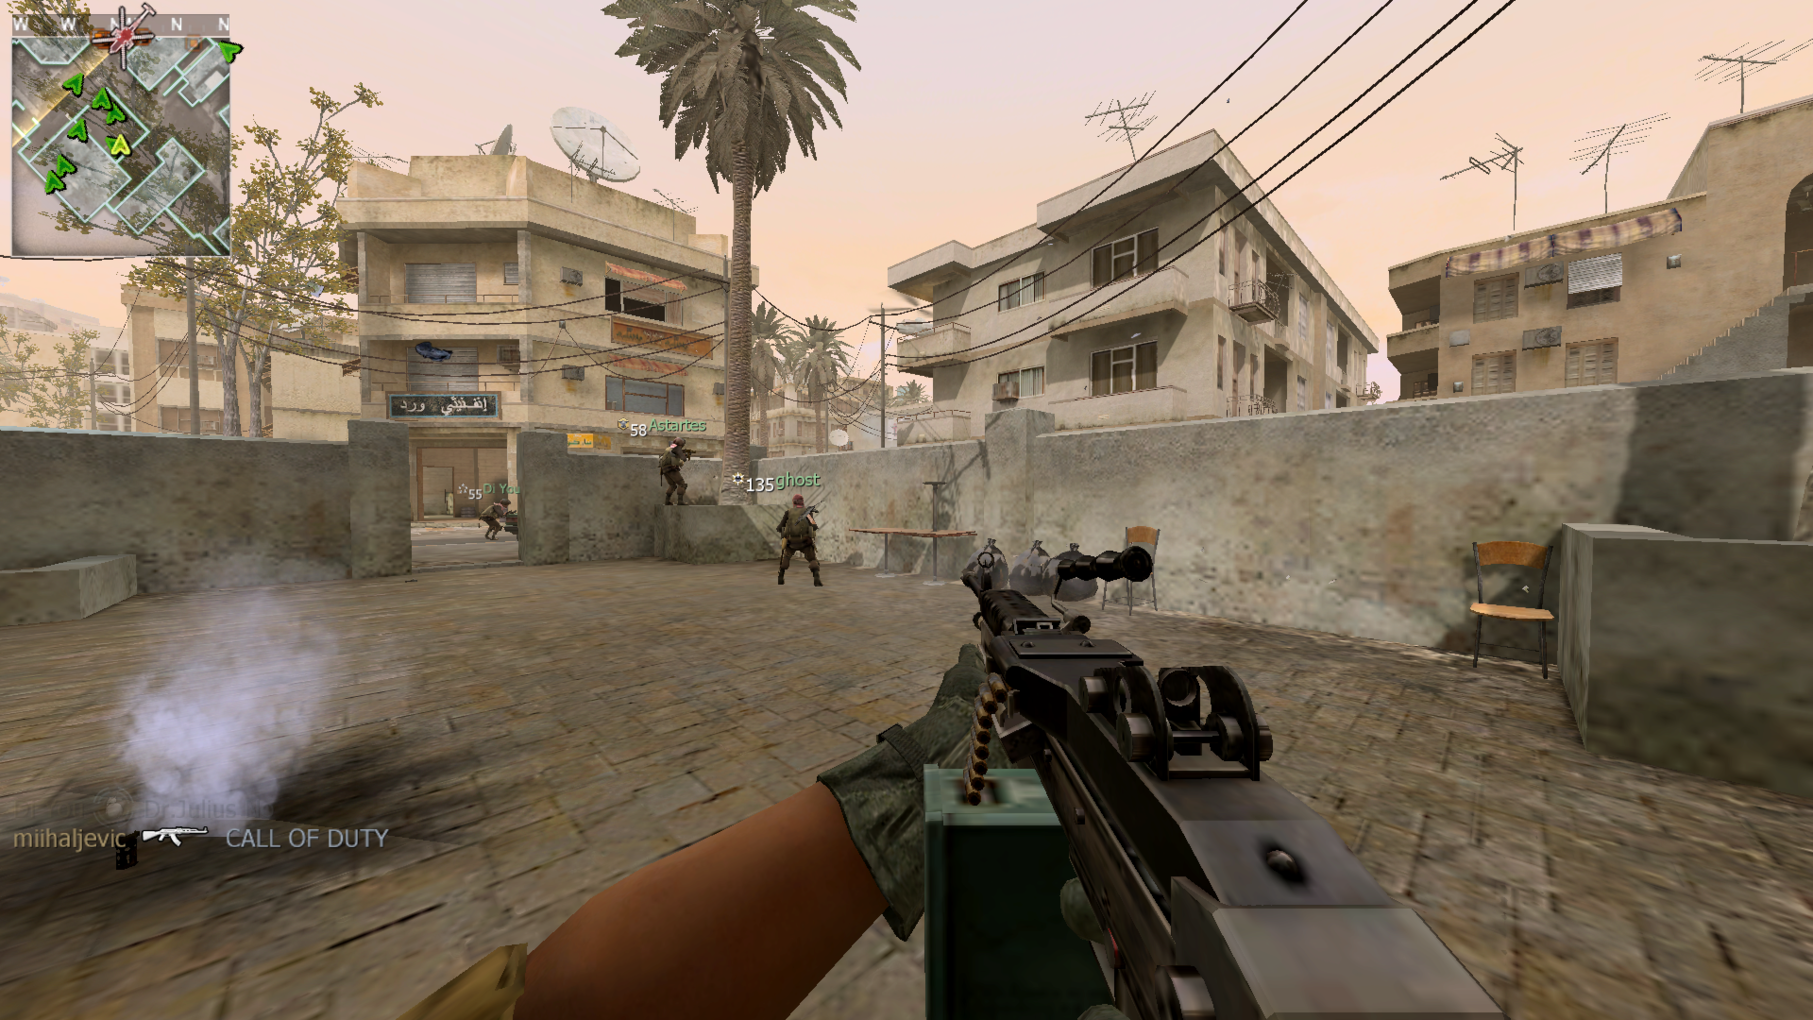 Modern Warfare 2 [iw4x] REPACK от canek77. Modern Warfare 2 (2009) REPACK by canek77. Canek77 репаки. Repack by canek77